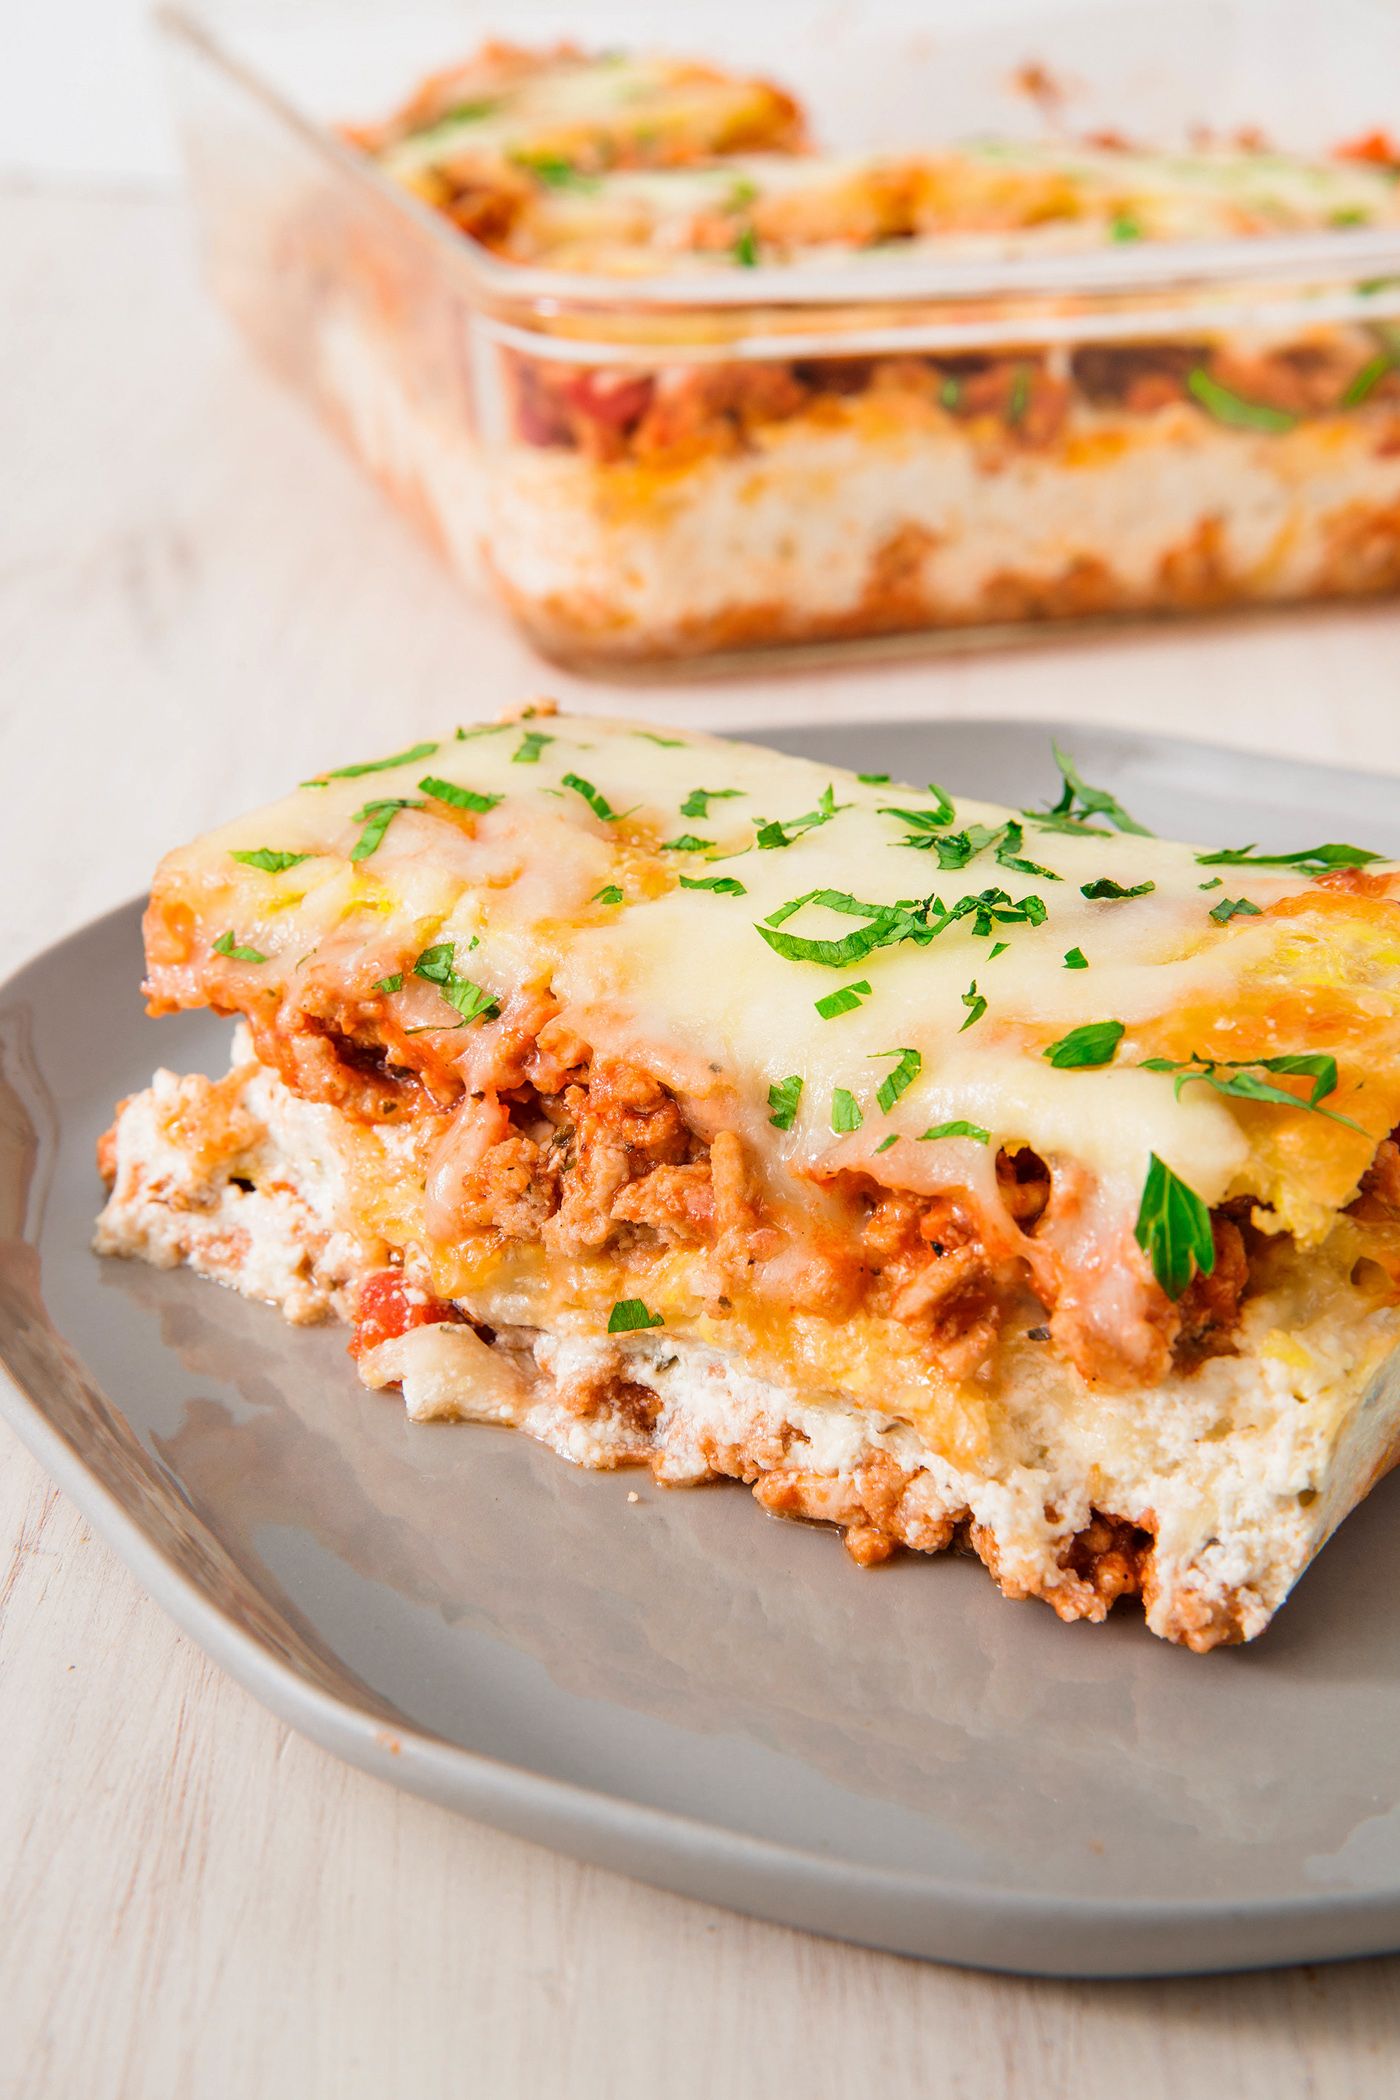 Best Keto Lasagna Recipe - How To A Low-Carb Lasagna